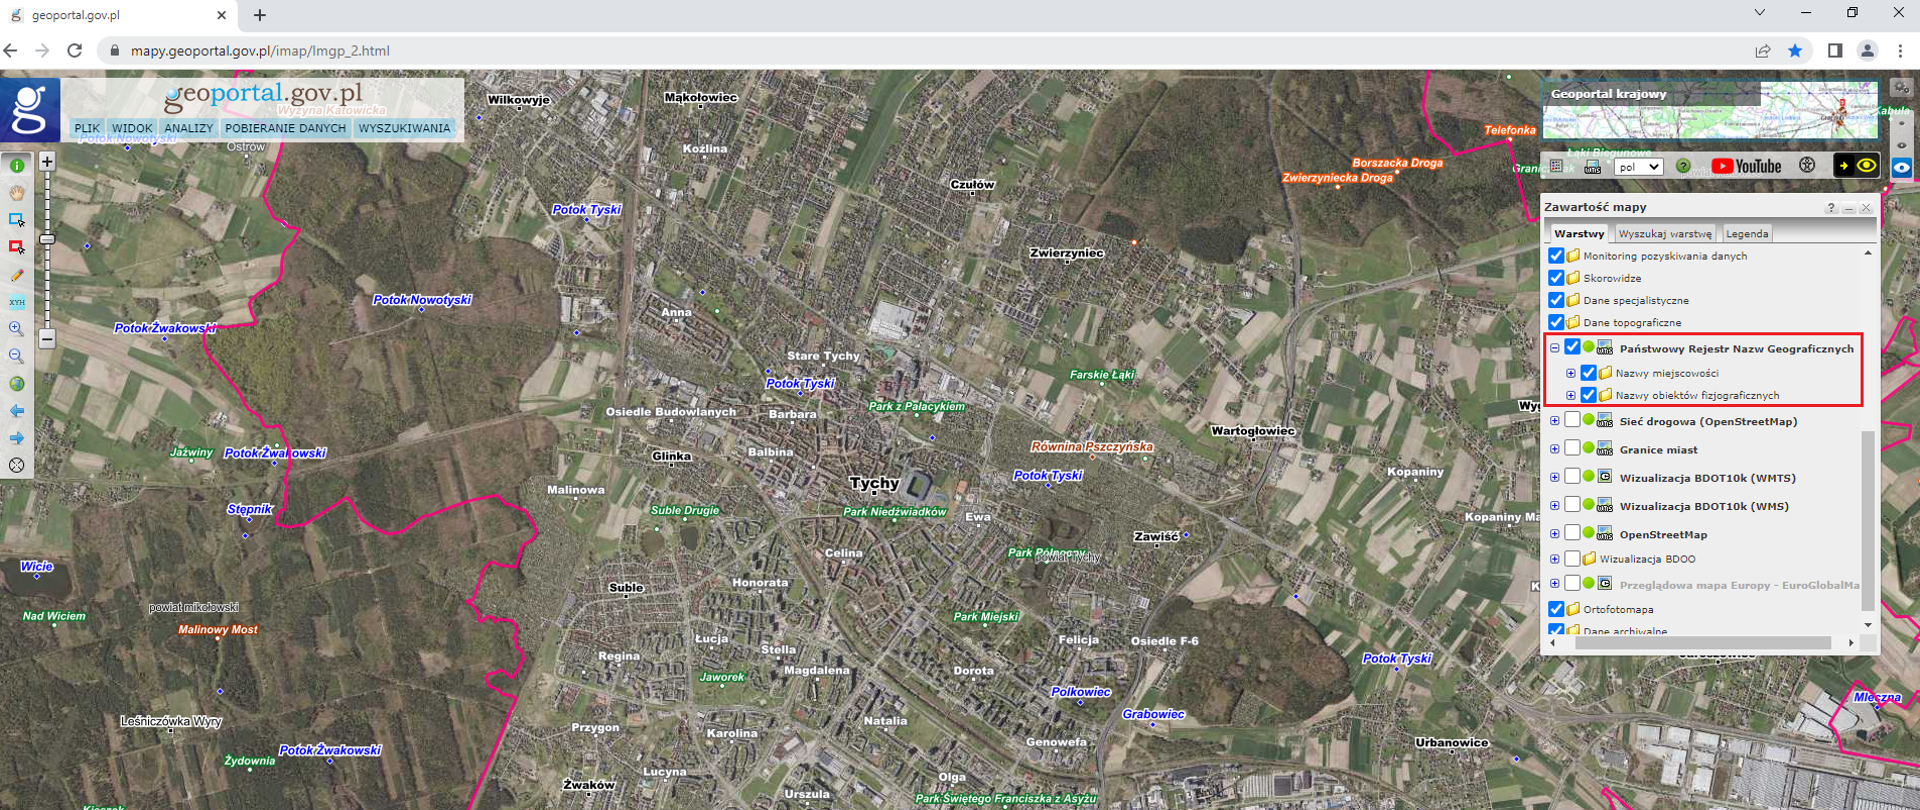 Ilustracja przedstawiająca zrzut ekranu z serwisu www.geoportal.gov.pl z uruchomioną usługą przeglądania danych państwowego rejestru nazw geograficznych oraz ortofotomapy na obszarze miasta Tychy.